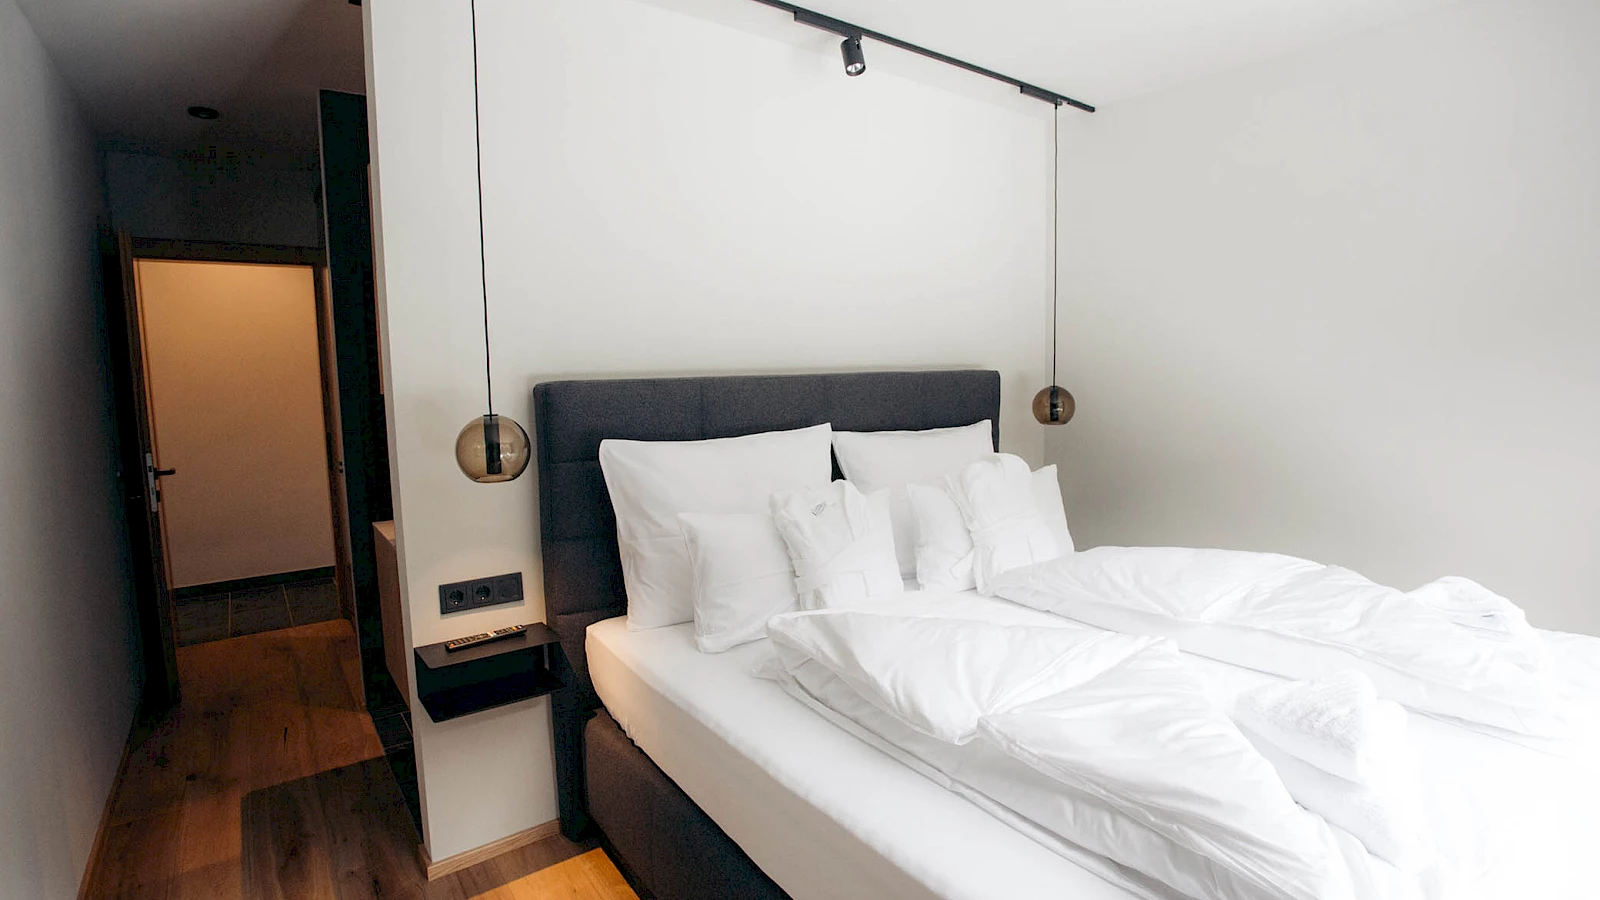 Die Betten im Adler Chalet Ischgl bieten einen unglaublichen Komfort. Die Bewertungen auf Booking.com sind herausragend.